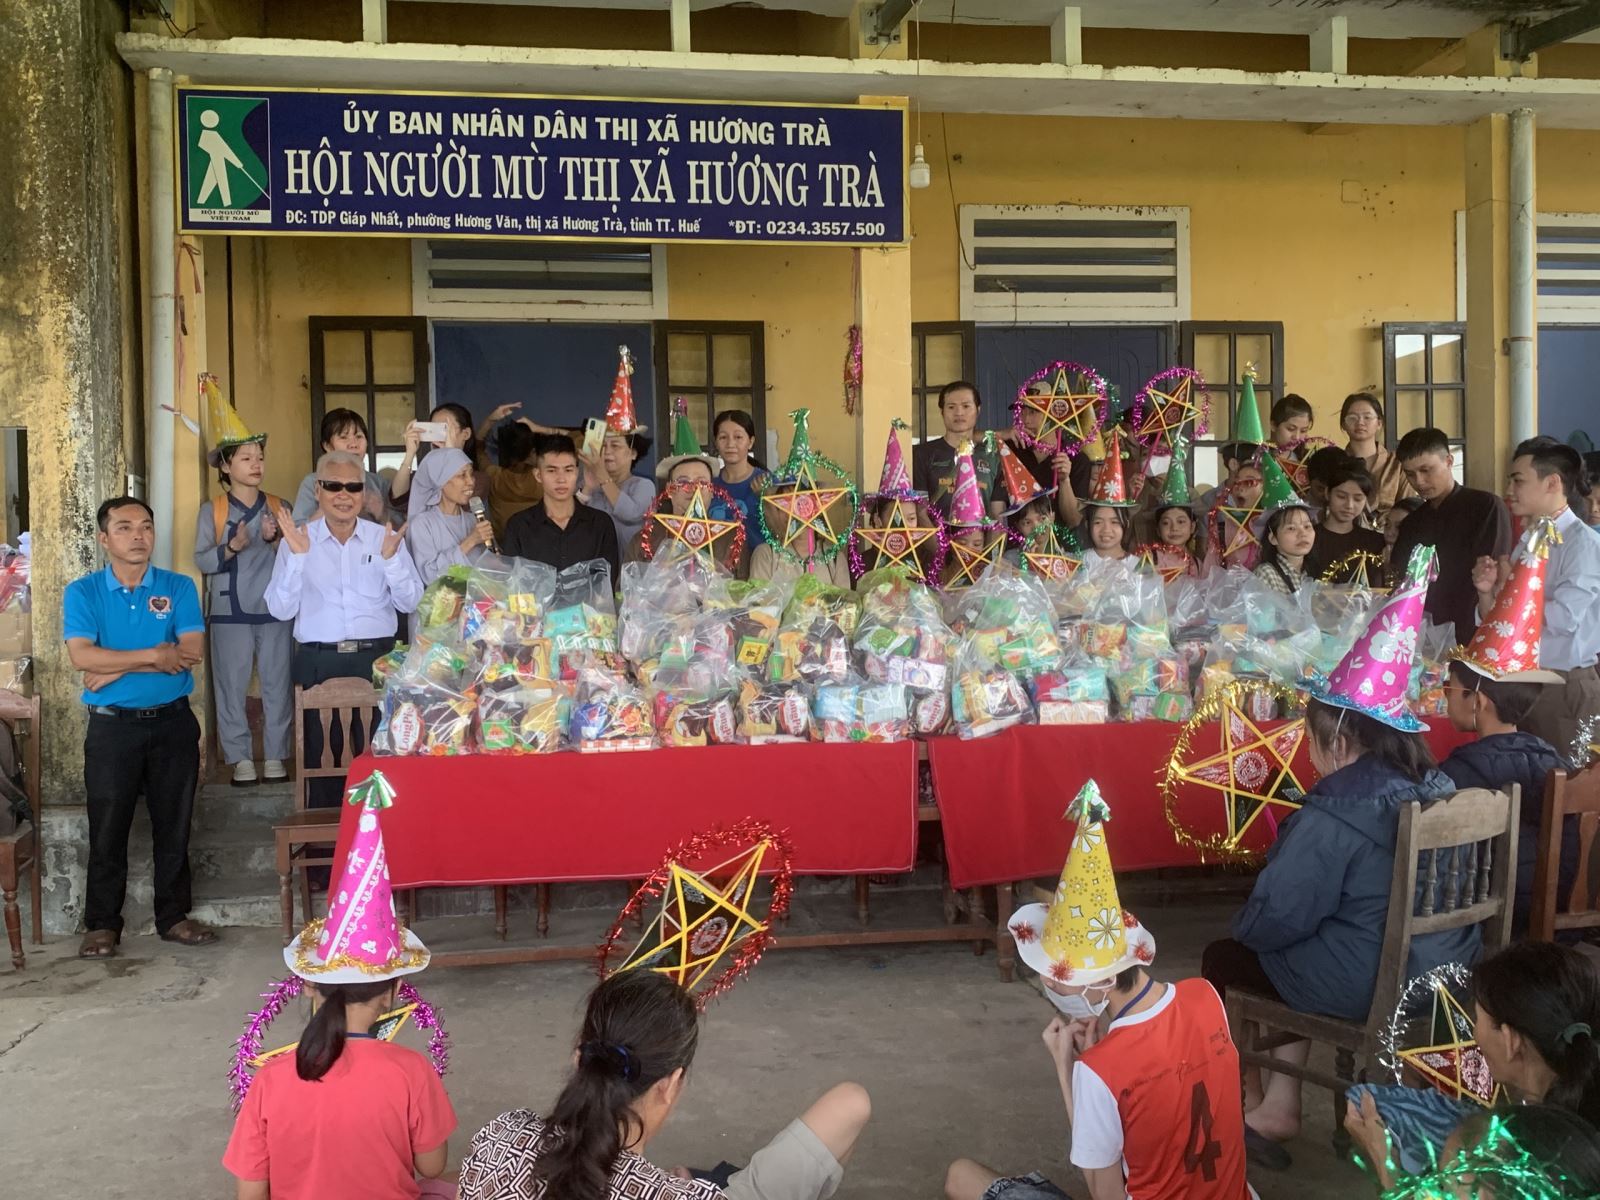 Đoàn từ thiện chùa Phổ Quang (TP. Huế) đã đến thăm và trao 100 suất quà trung thu cho các em khuyết tật, con người mù nghèo ở Hương Trà.